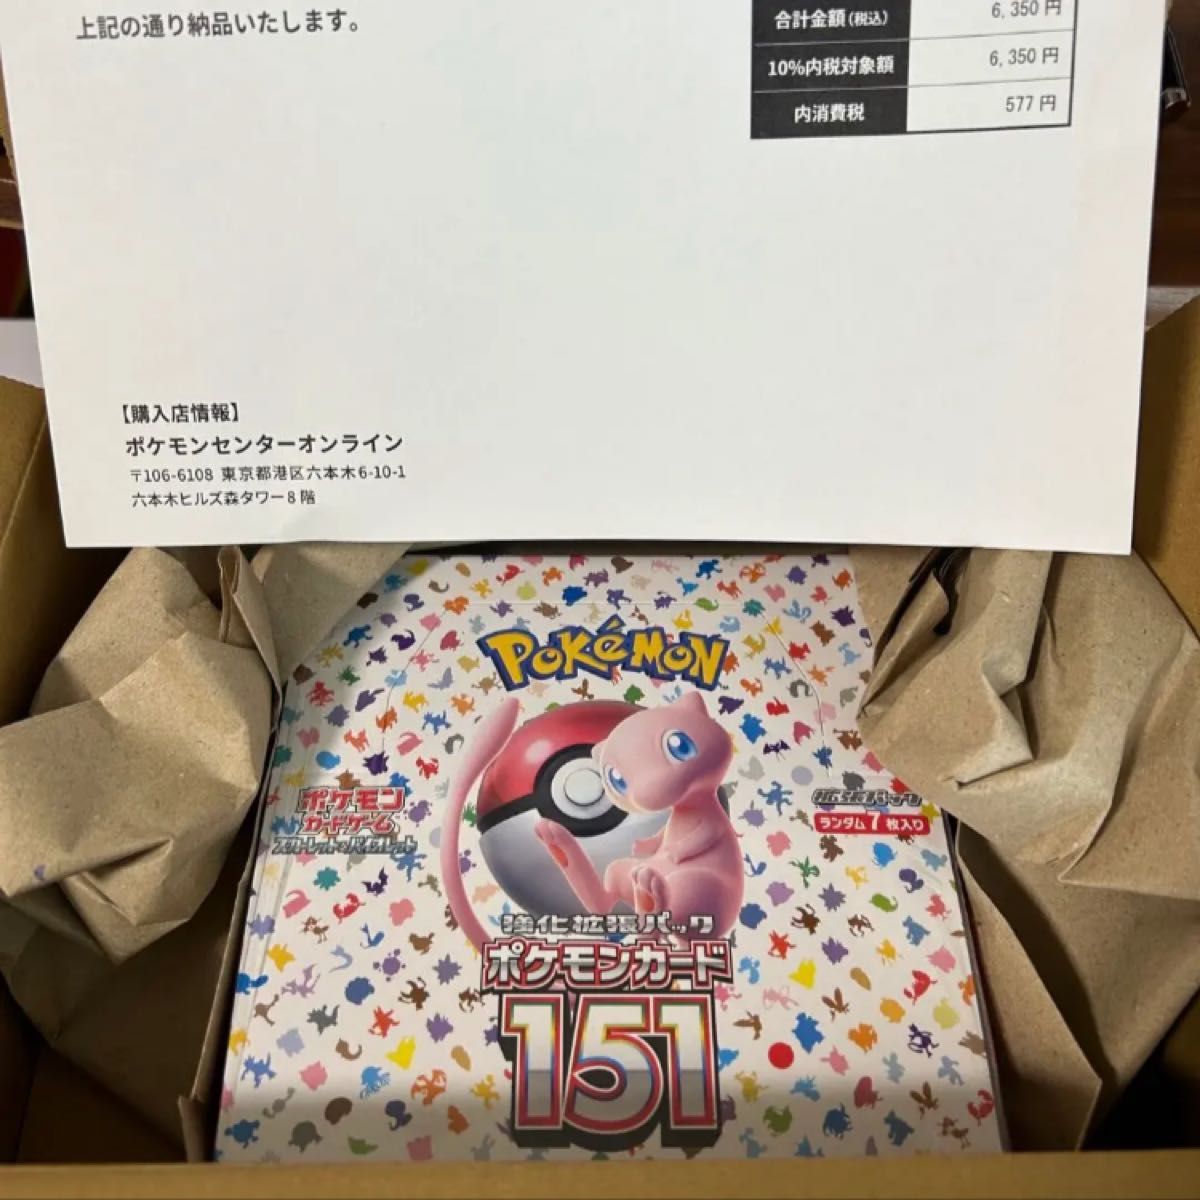 シュリンク付き】ポケモンカード 151 BOX 新品未開封 ポケセン産